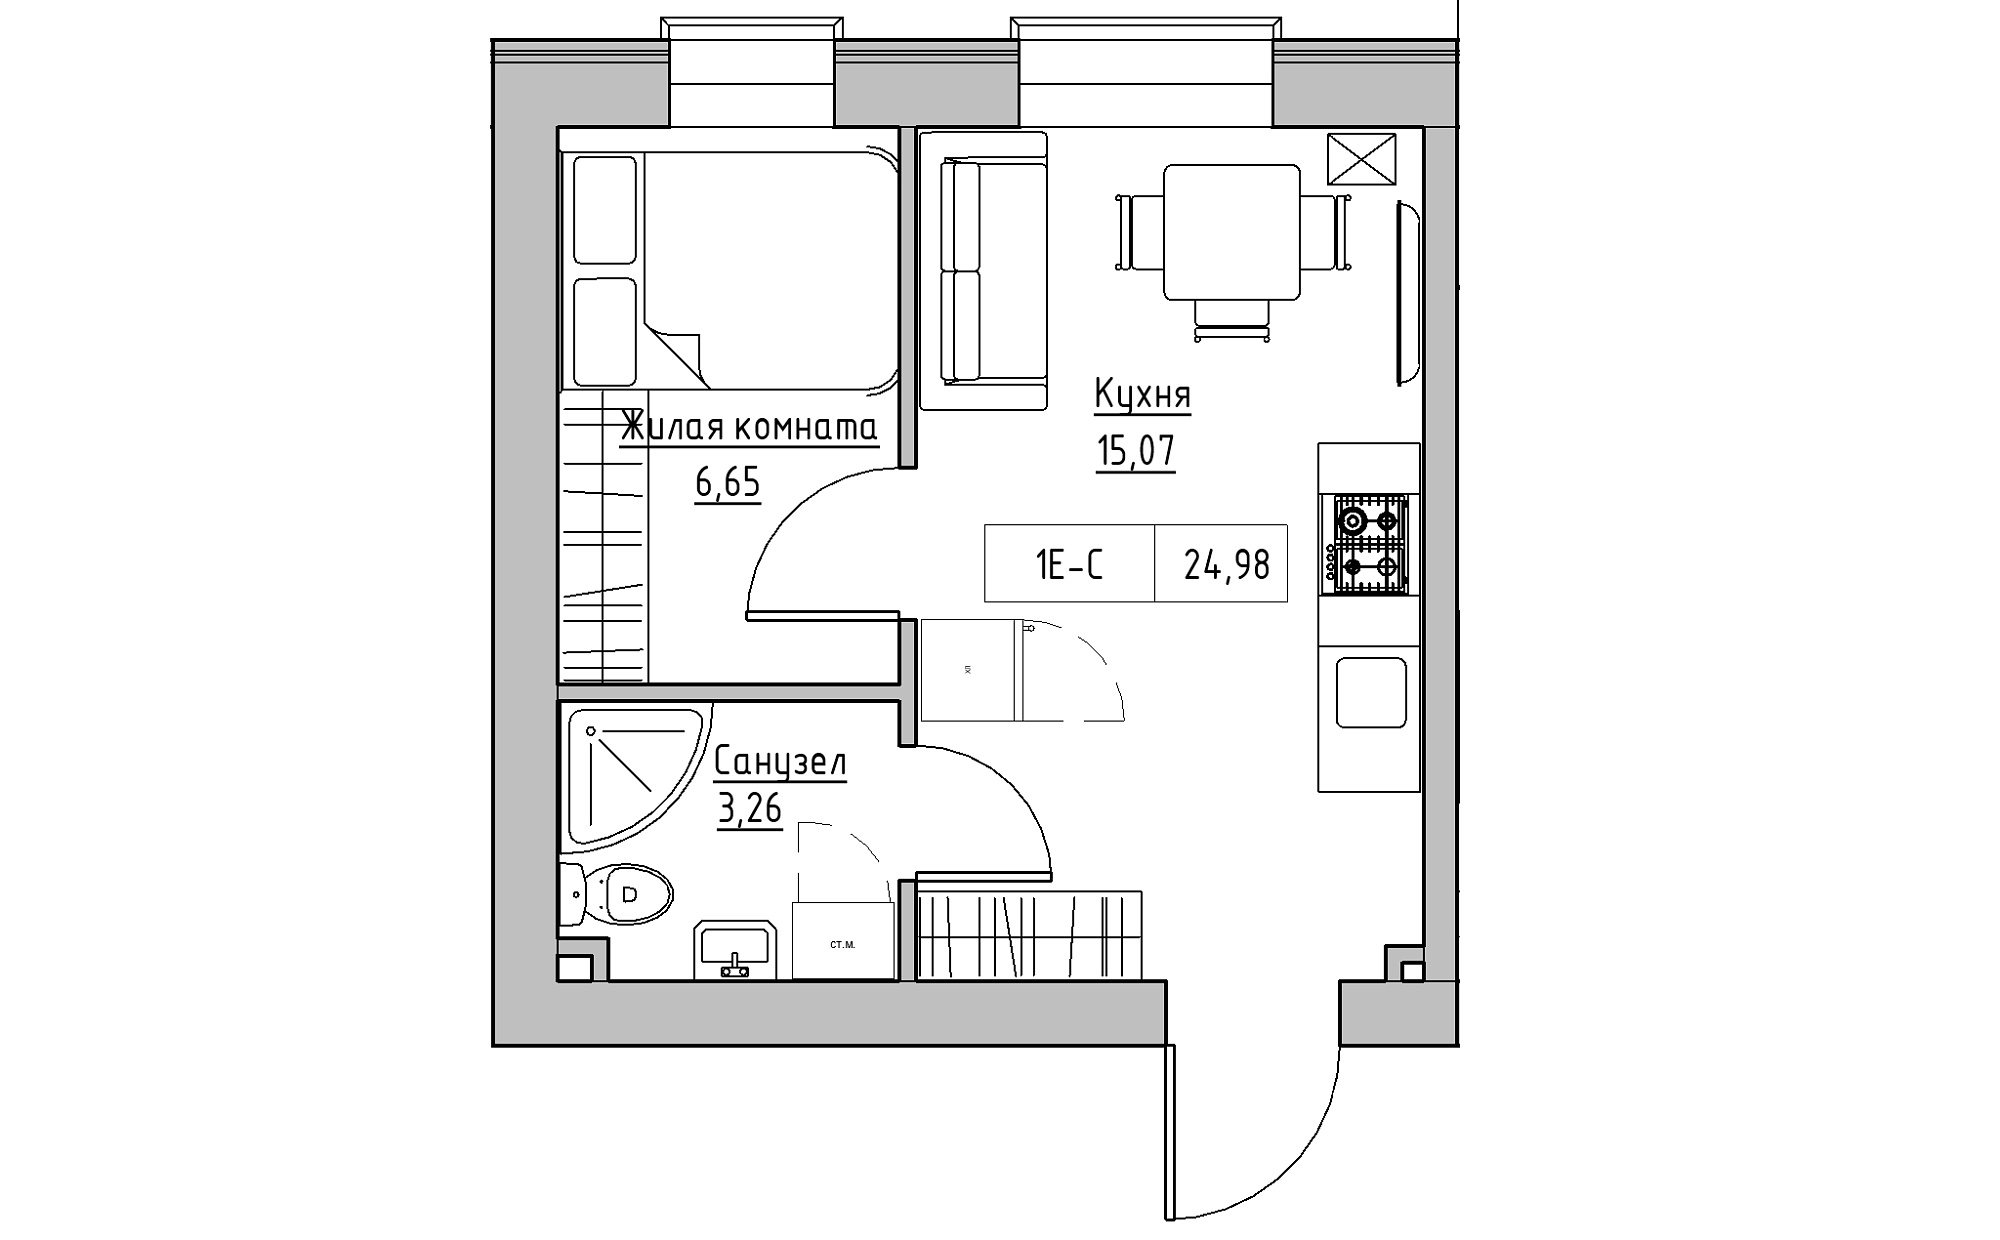 Планування 1-к квартира площею 24.98м2, KS-022-01/0004.